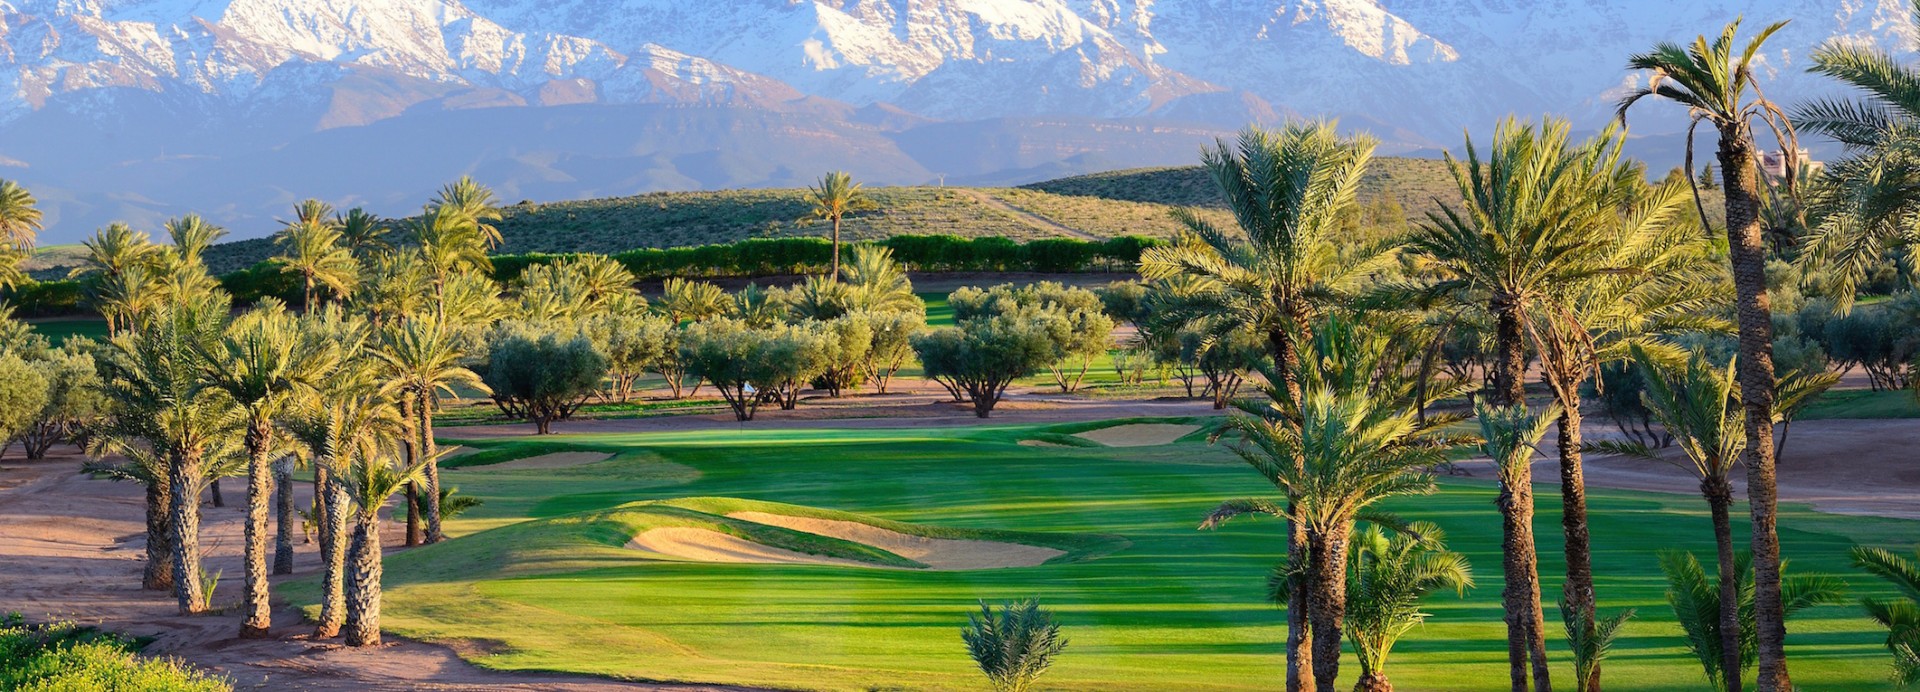 Assoufid Golf Club  | Golfové zájezdy, golfová dovolená, luxusní golf